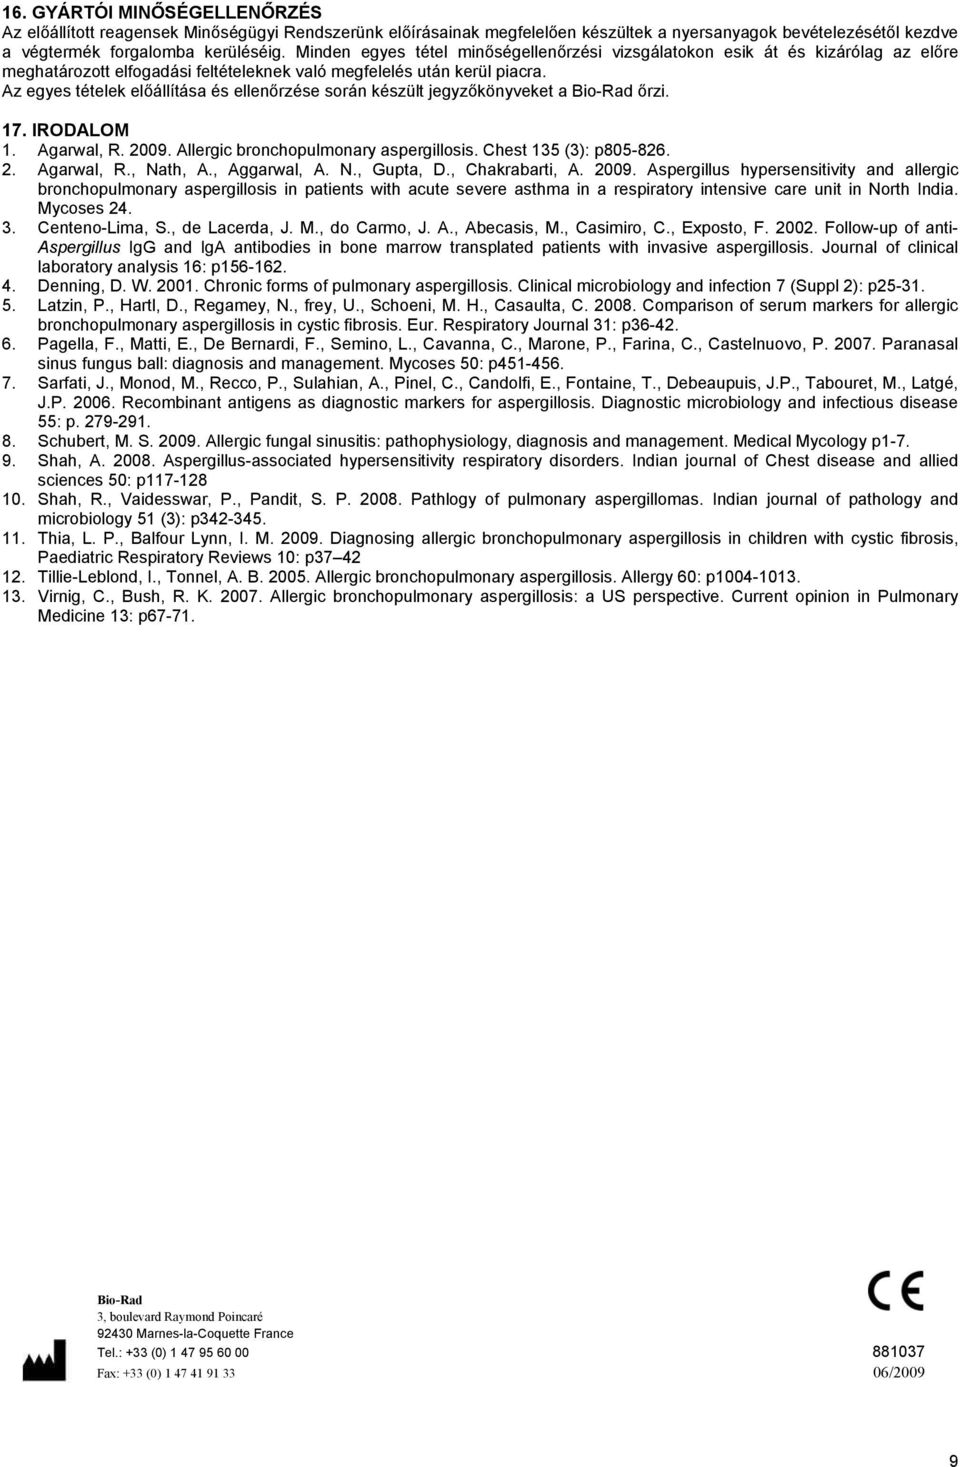 Az egyes tételek előállítása és ellenőrzése során készült jegyzőkönyveket a Bio-Rad őrzi. 17. IRODALOM 1. Agarwal, R. 2009. Allergic bronchopulmonary aspergillosis. Chest 135 (3): p805-826. 2. Agarwal, R., Nath, A.